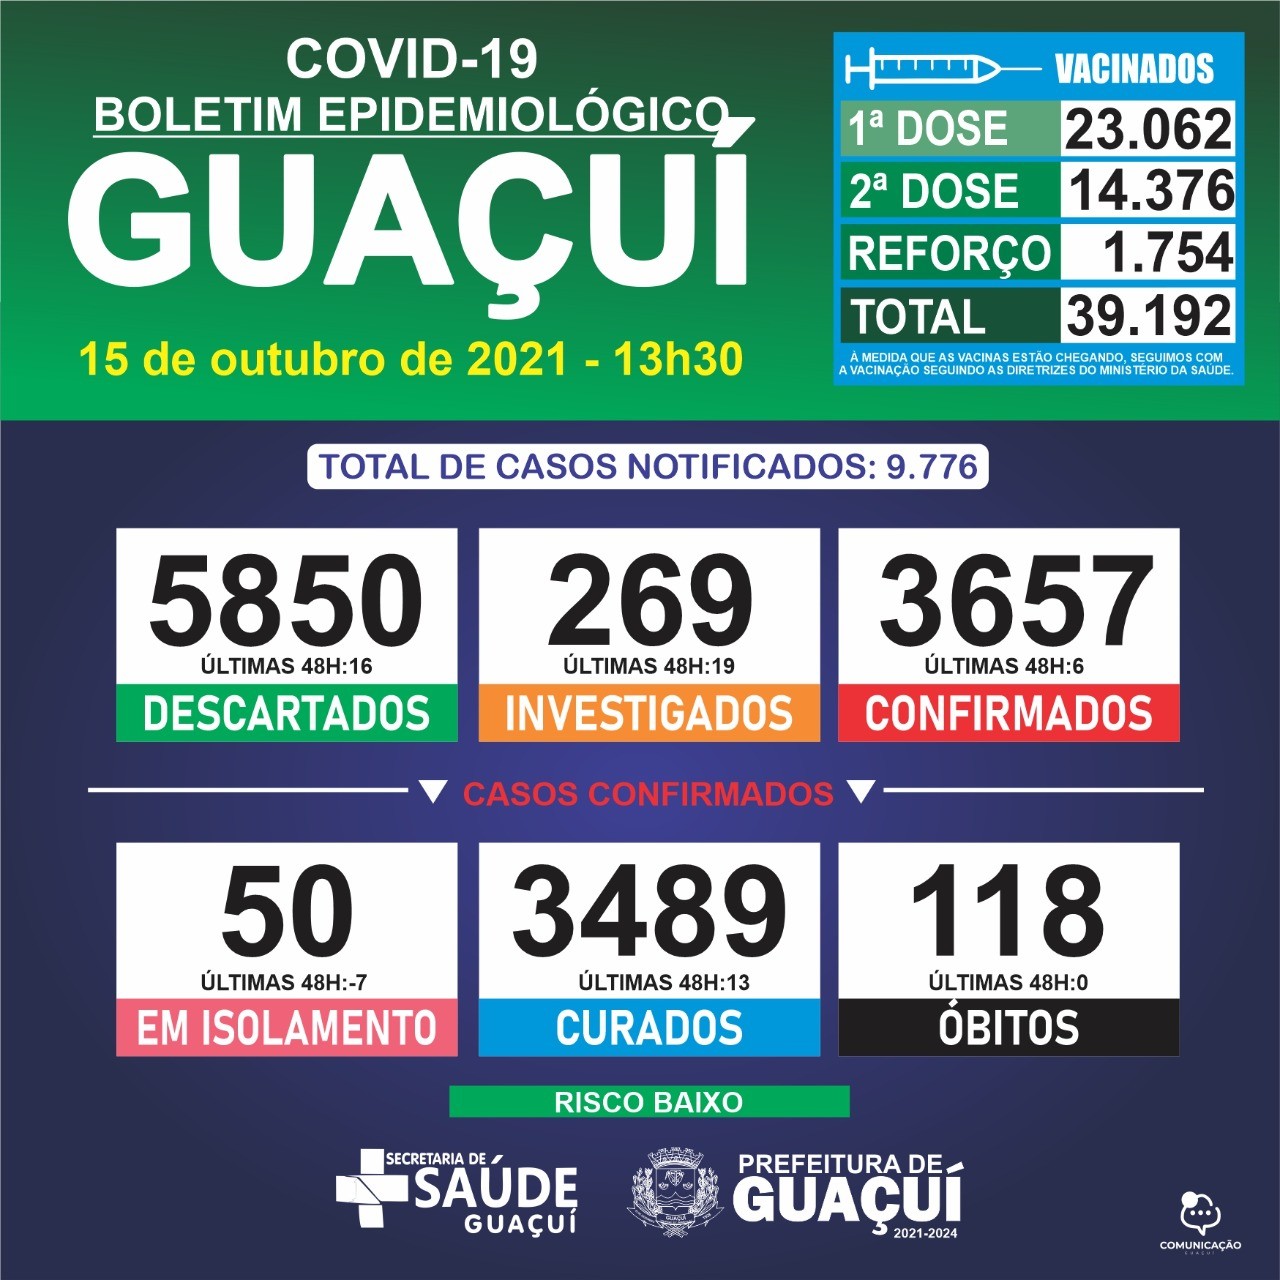 Boletim Epidemiológico 15/10/2021: Guaçuí registra 06 casos confirmados e 13 curados nas últimas 48 horas